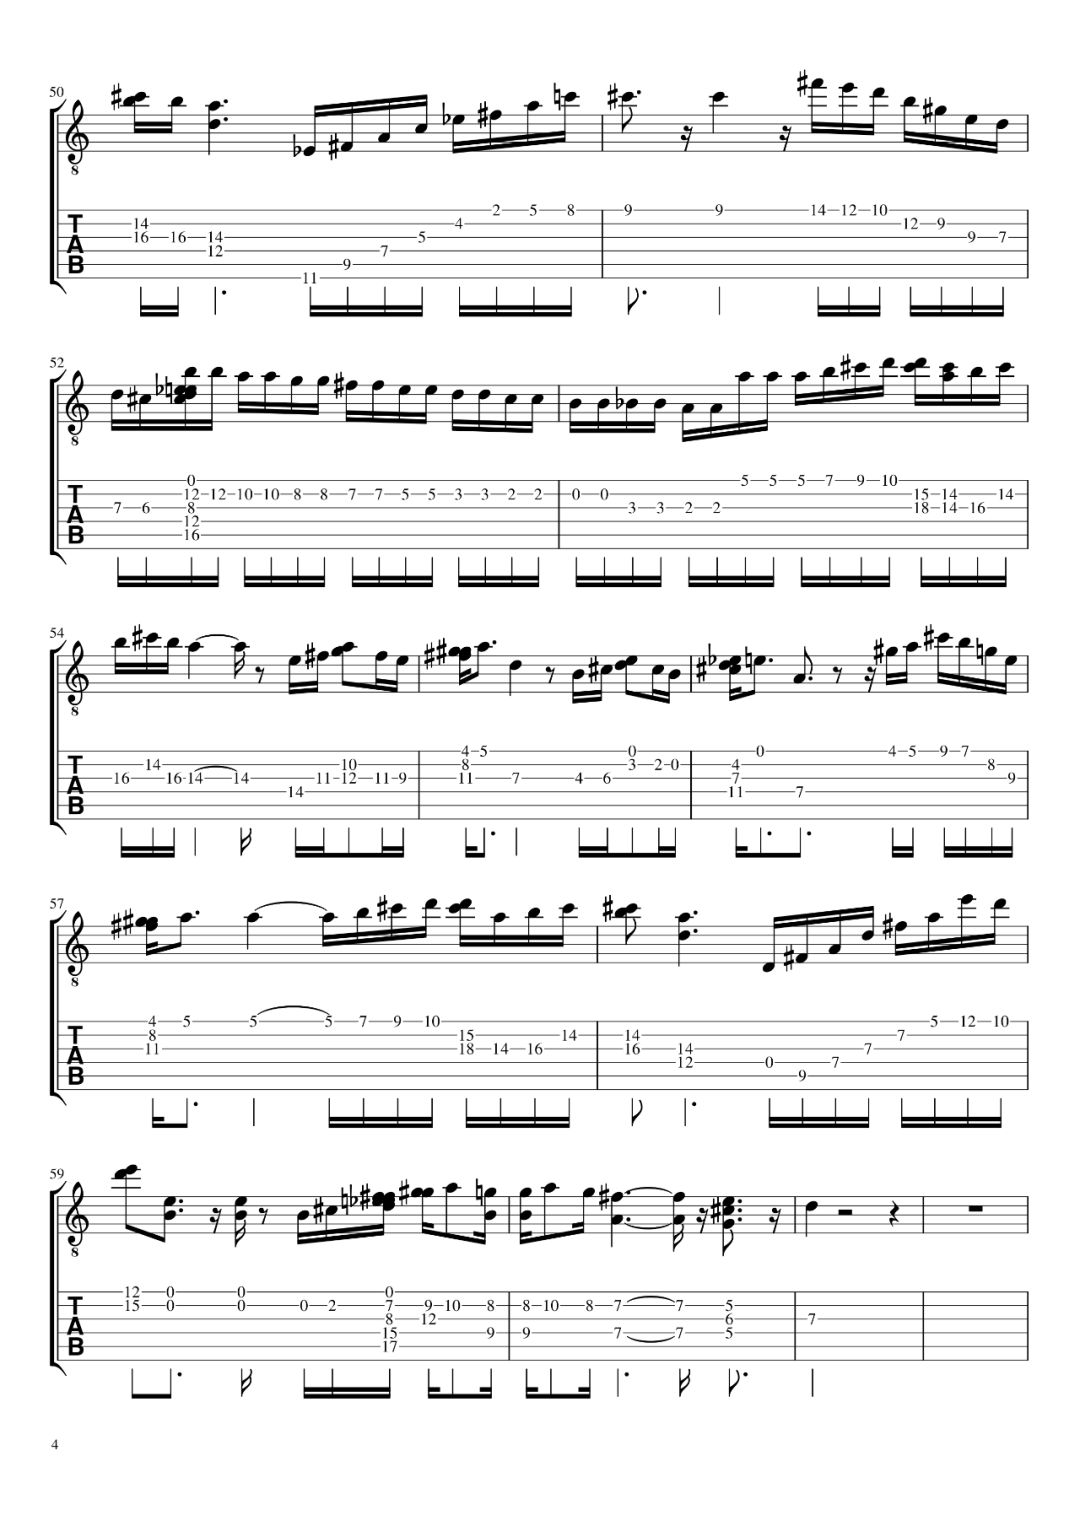 阿拉伯风格曲-布格缪勒-钢琴谱文件（五线谱、双手简谱、数字谱、Midi、PDF）免费下载